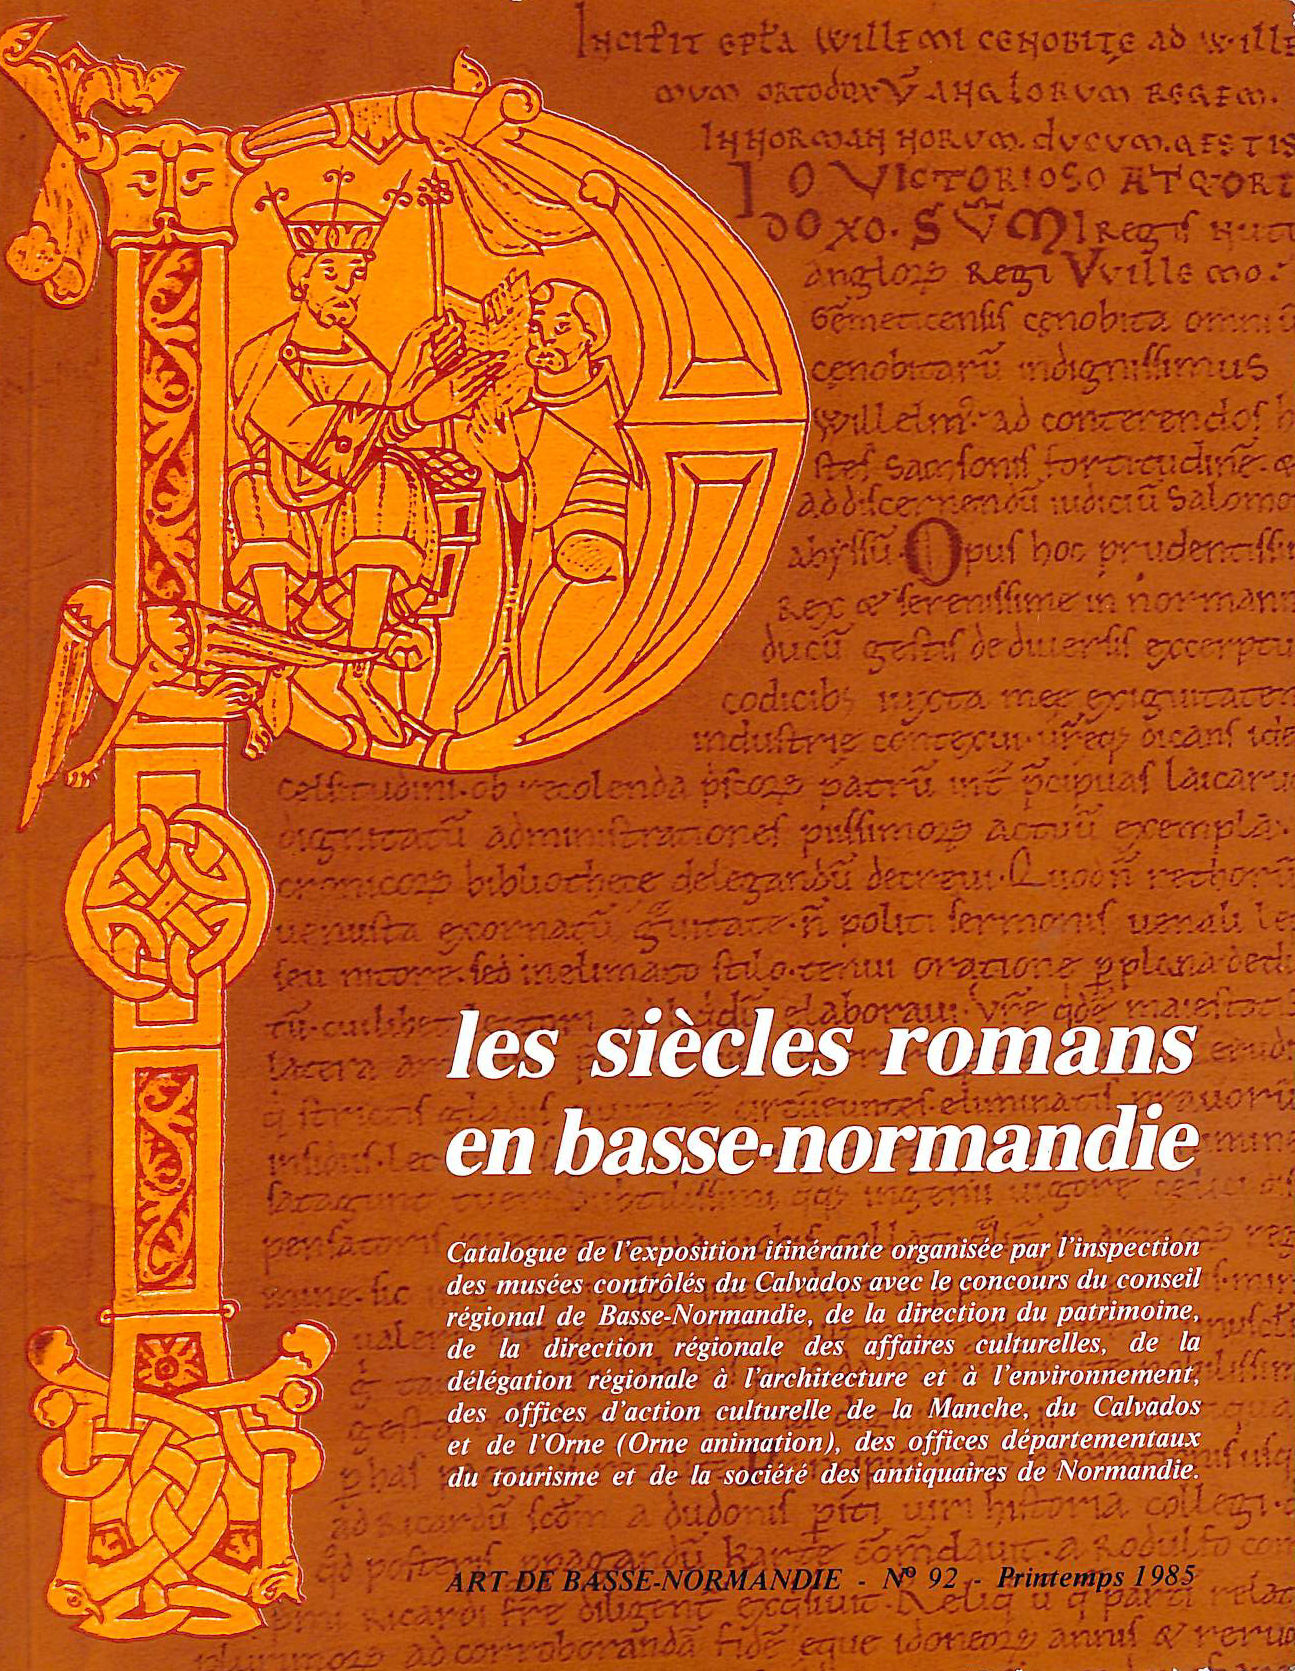 NO AUTHOR. [AUTEUR] - LES SIECLES ROMANS EN BASSE-NORMANDIE: ART DE BASSE-NORMANDIE NO. 92.